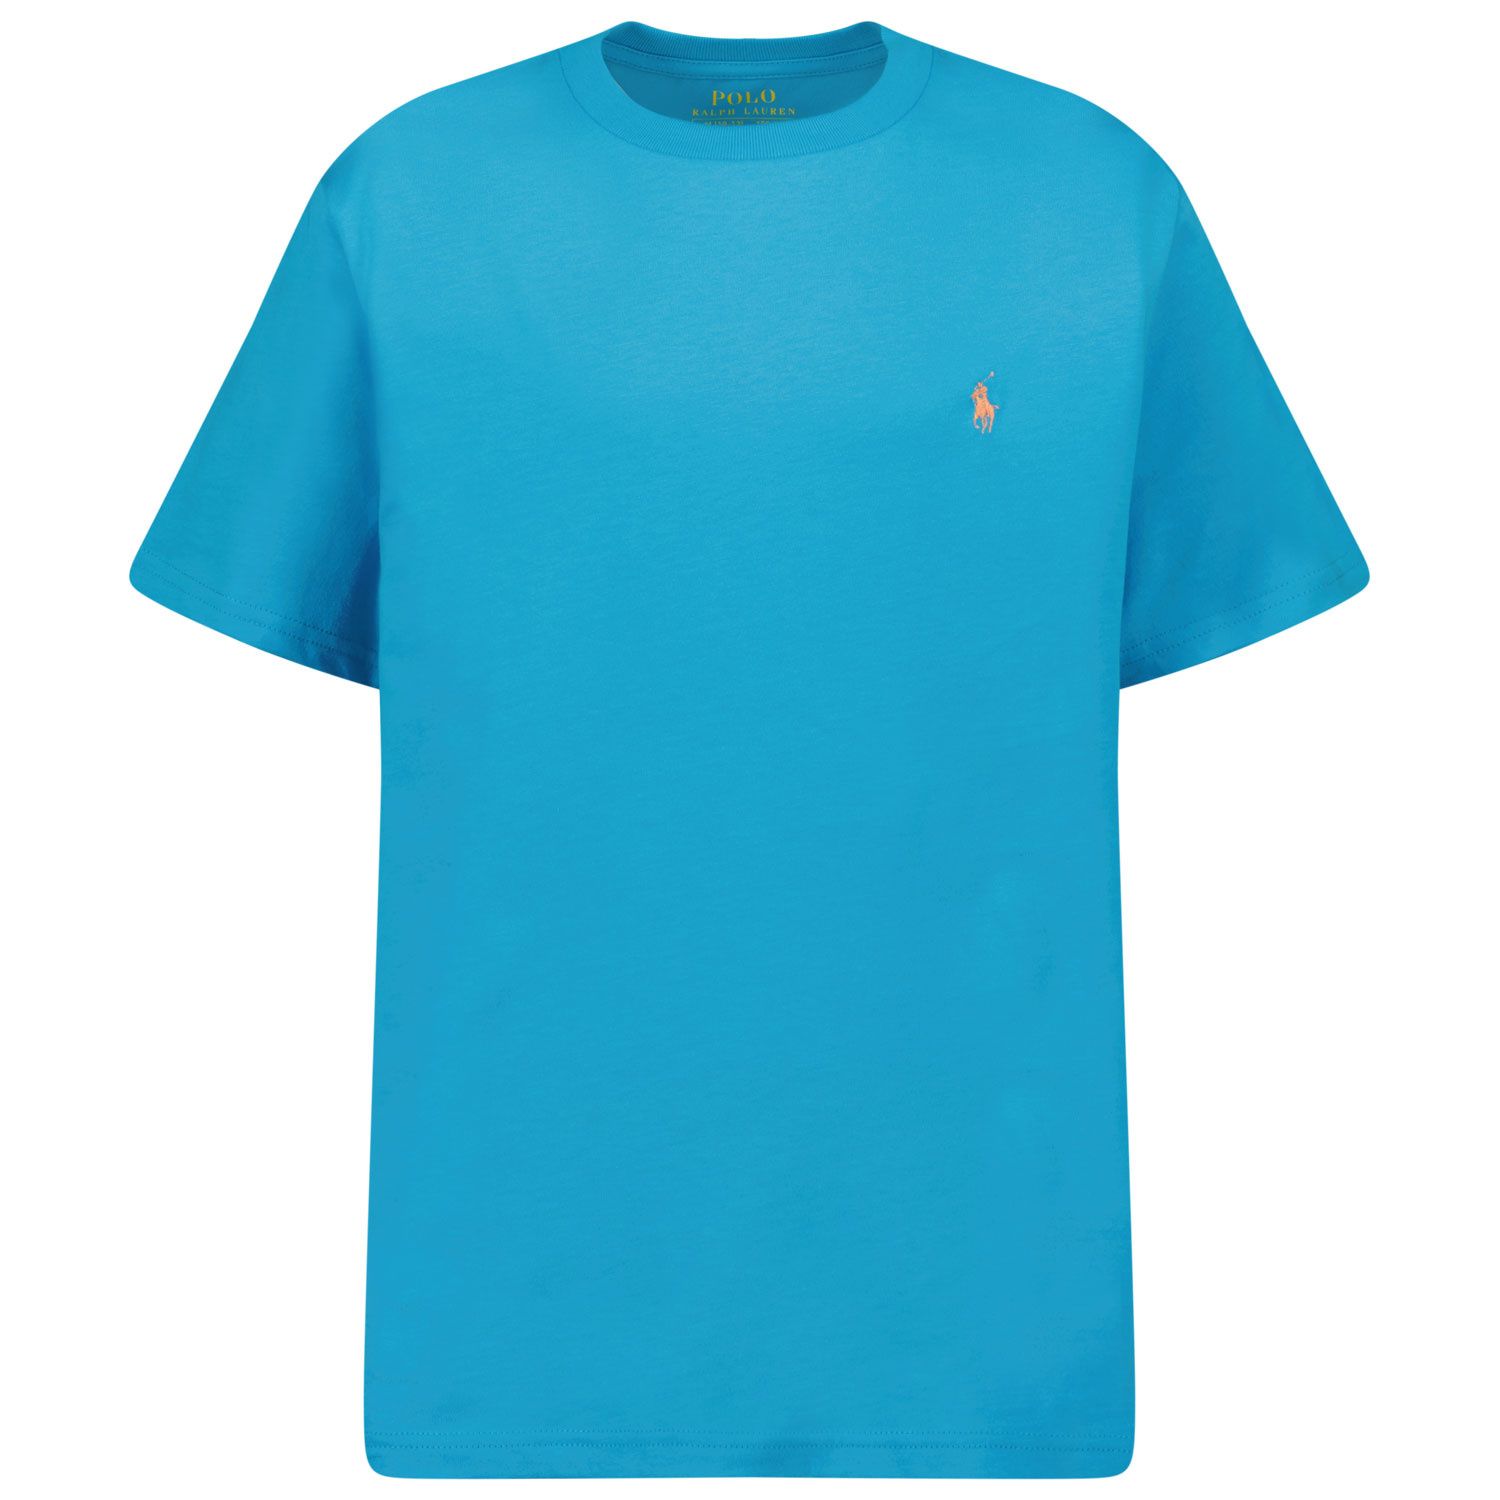 Afbeelding van Ralph Lauren 832904 kinder t-shirt turquoise